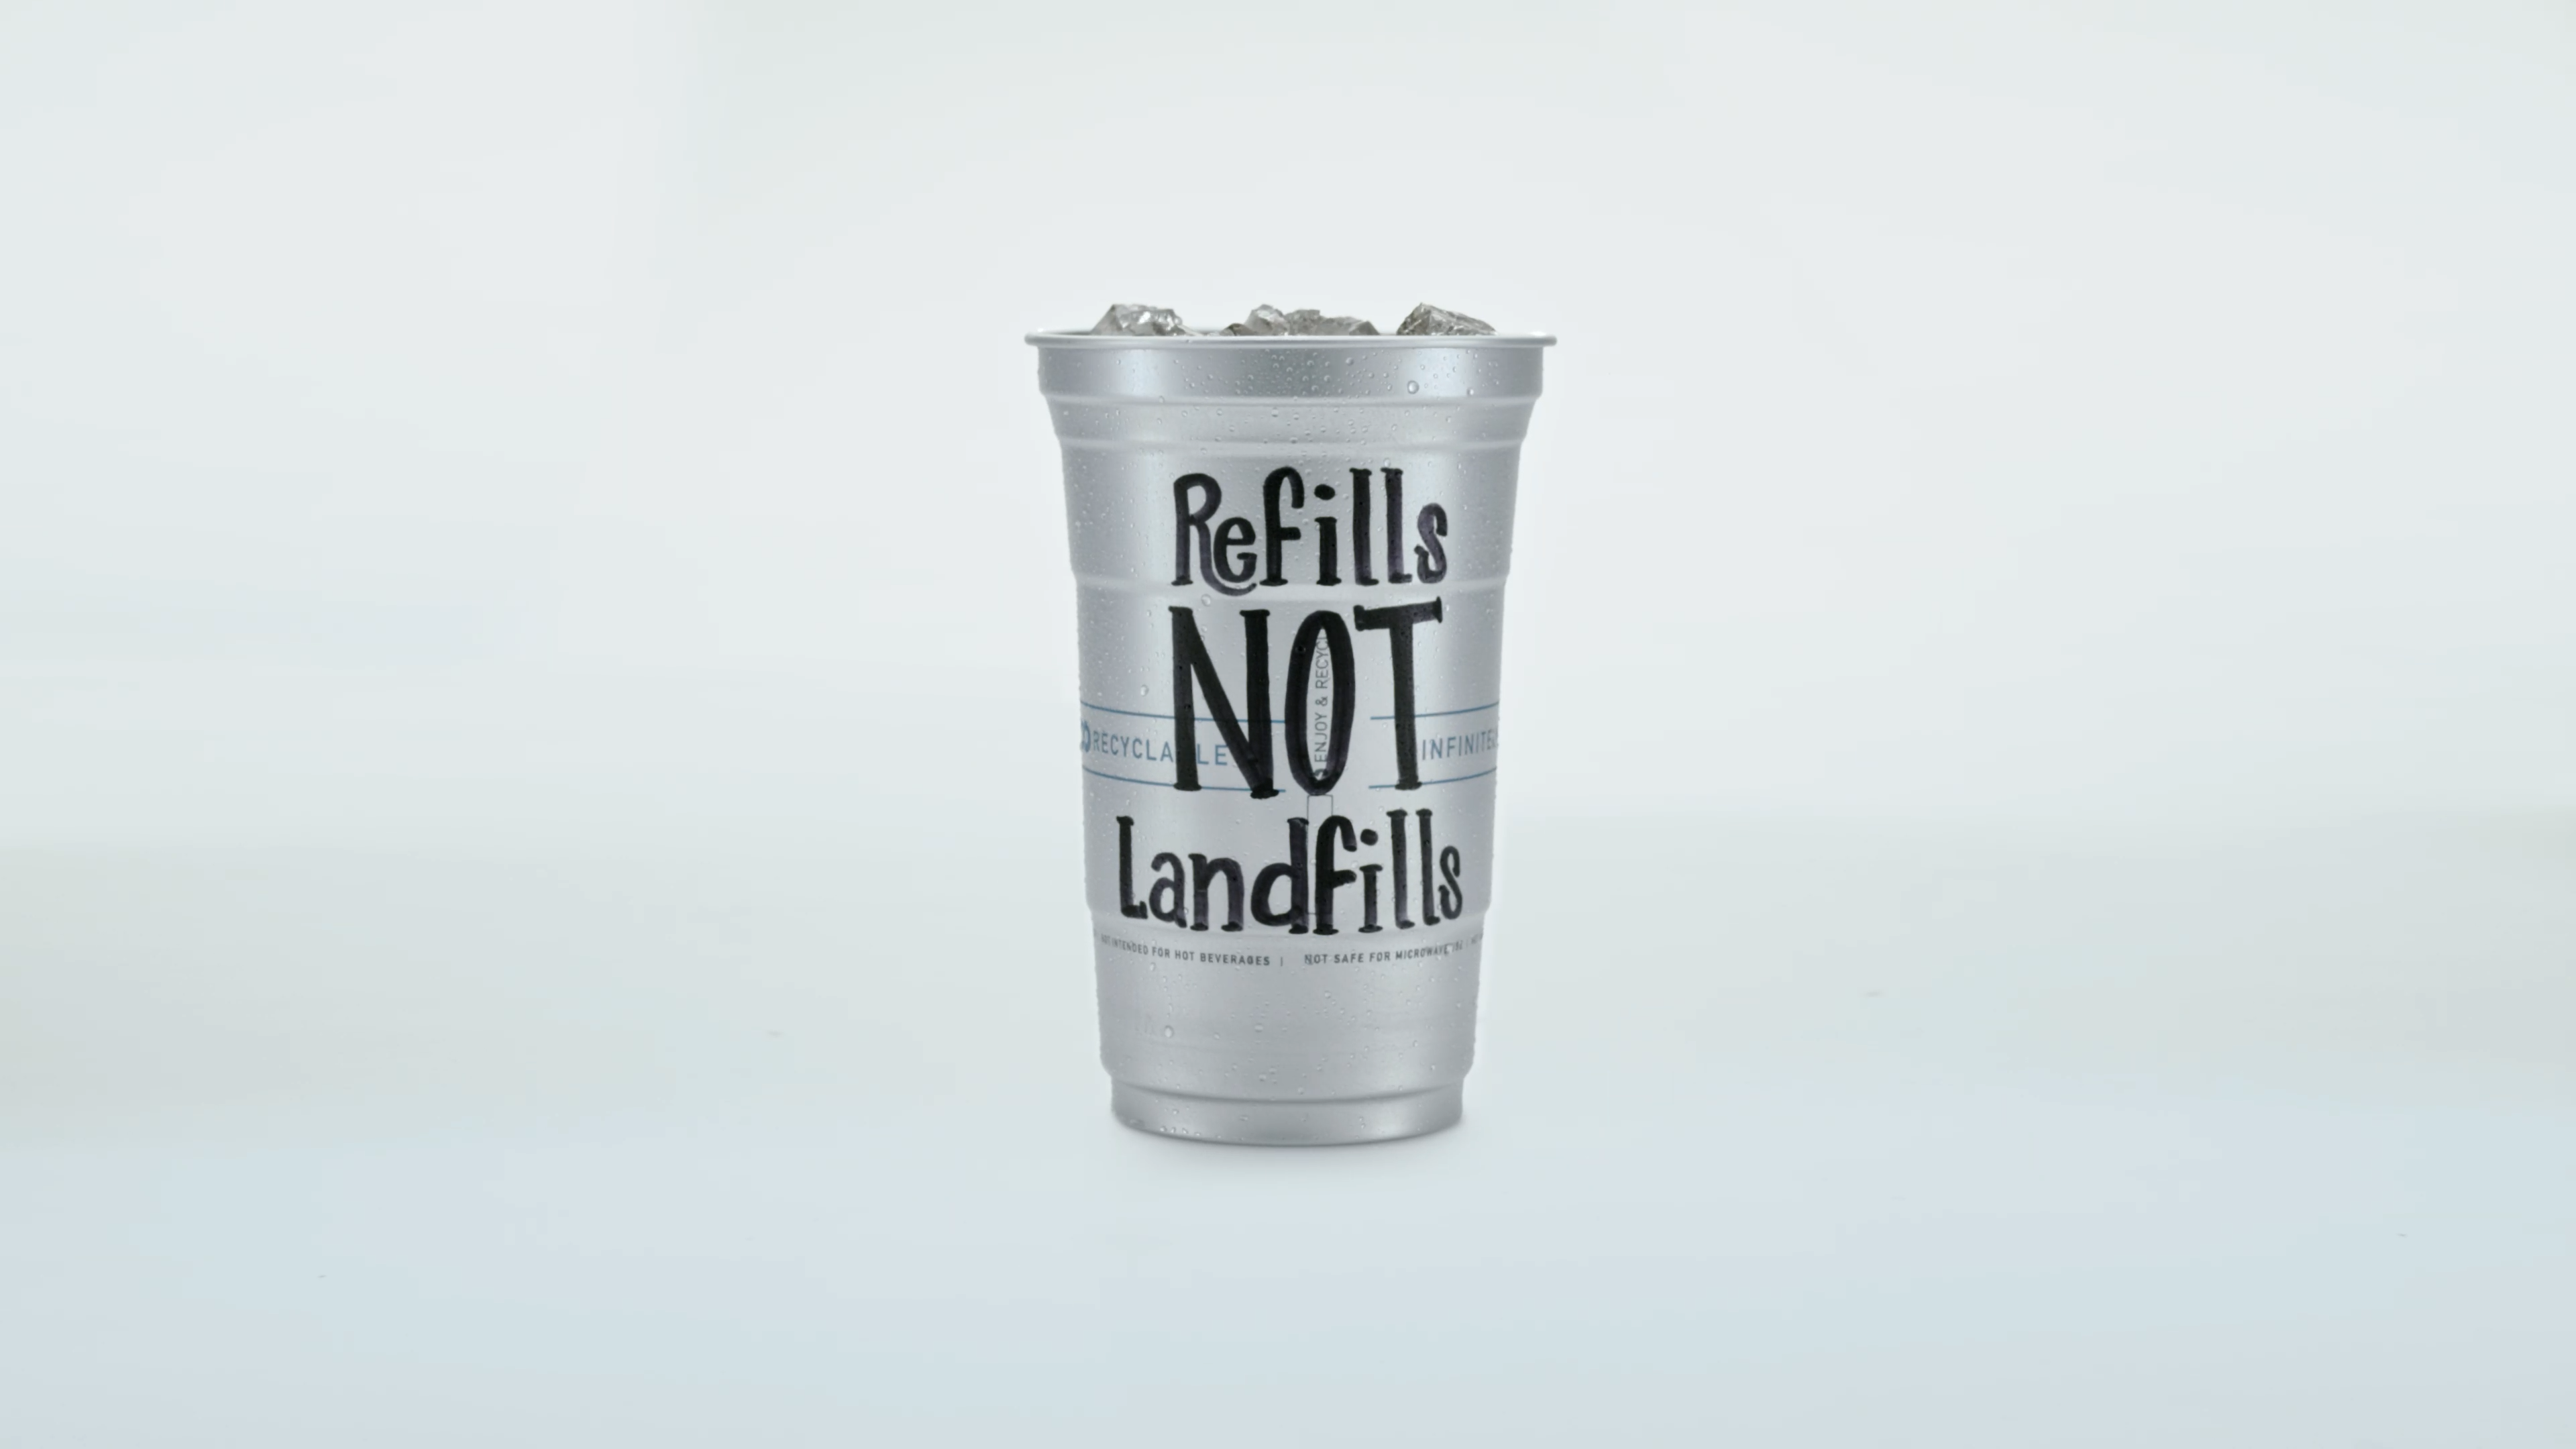 Refills Not Landfills